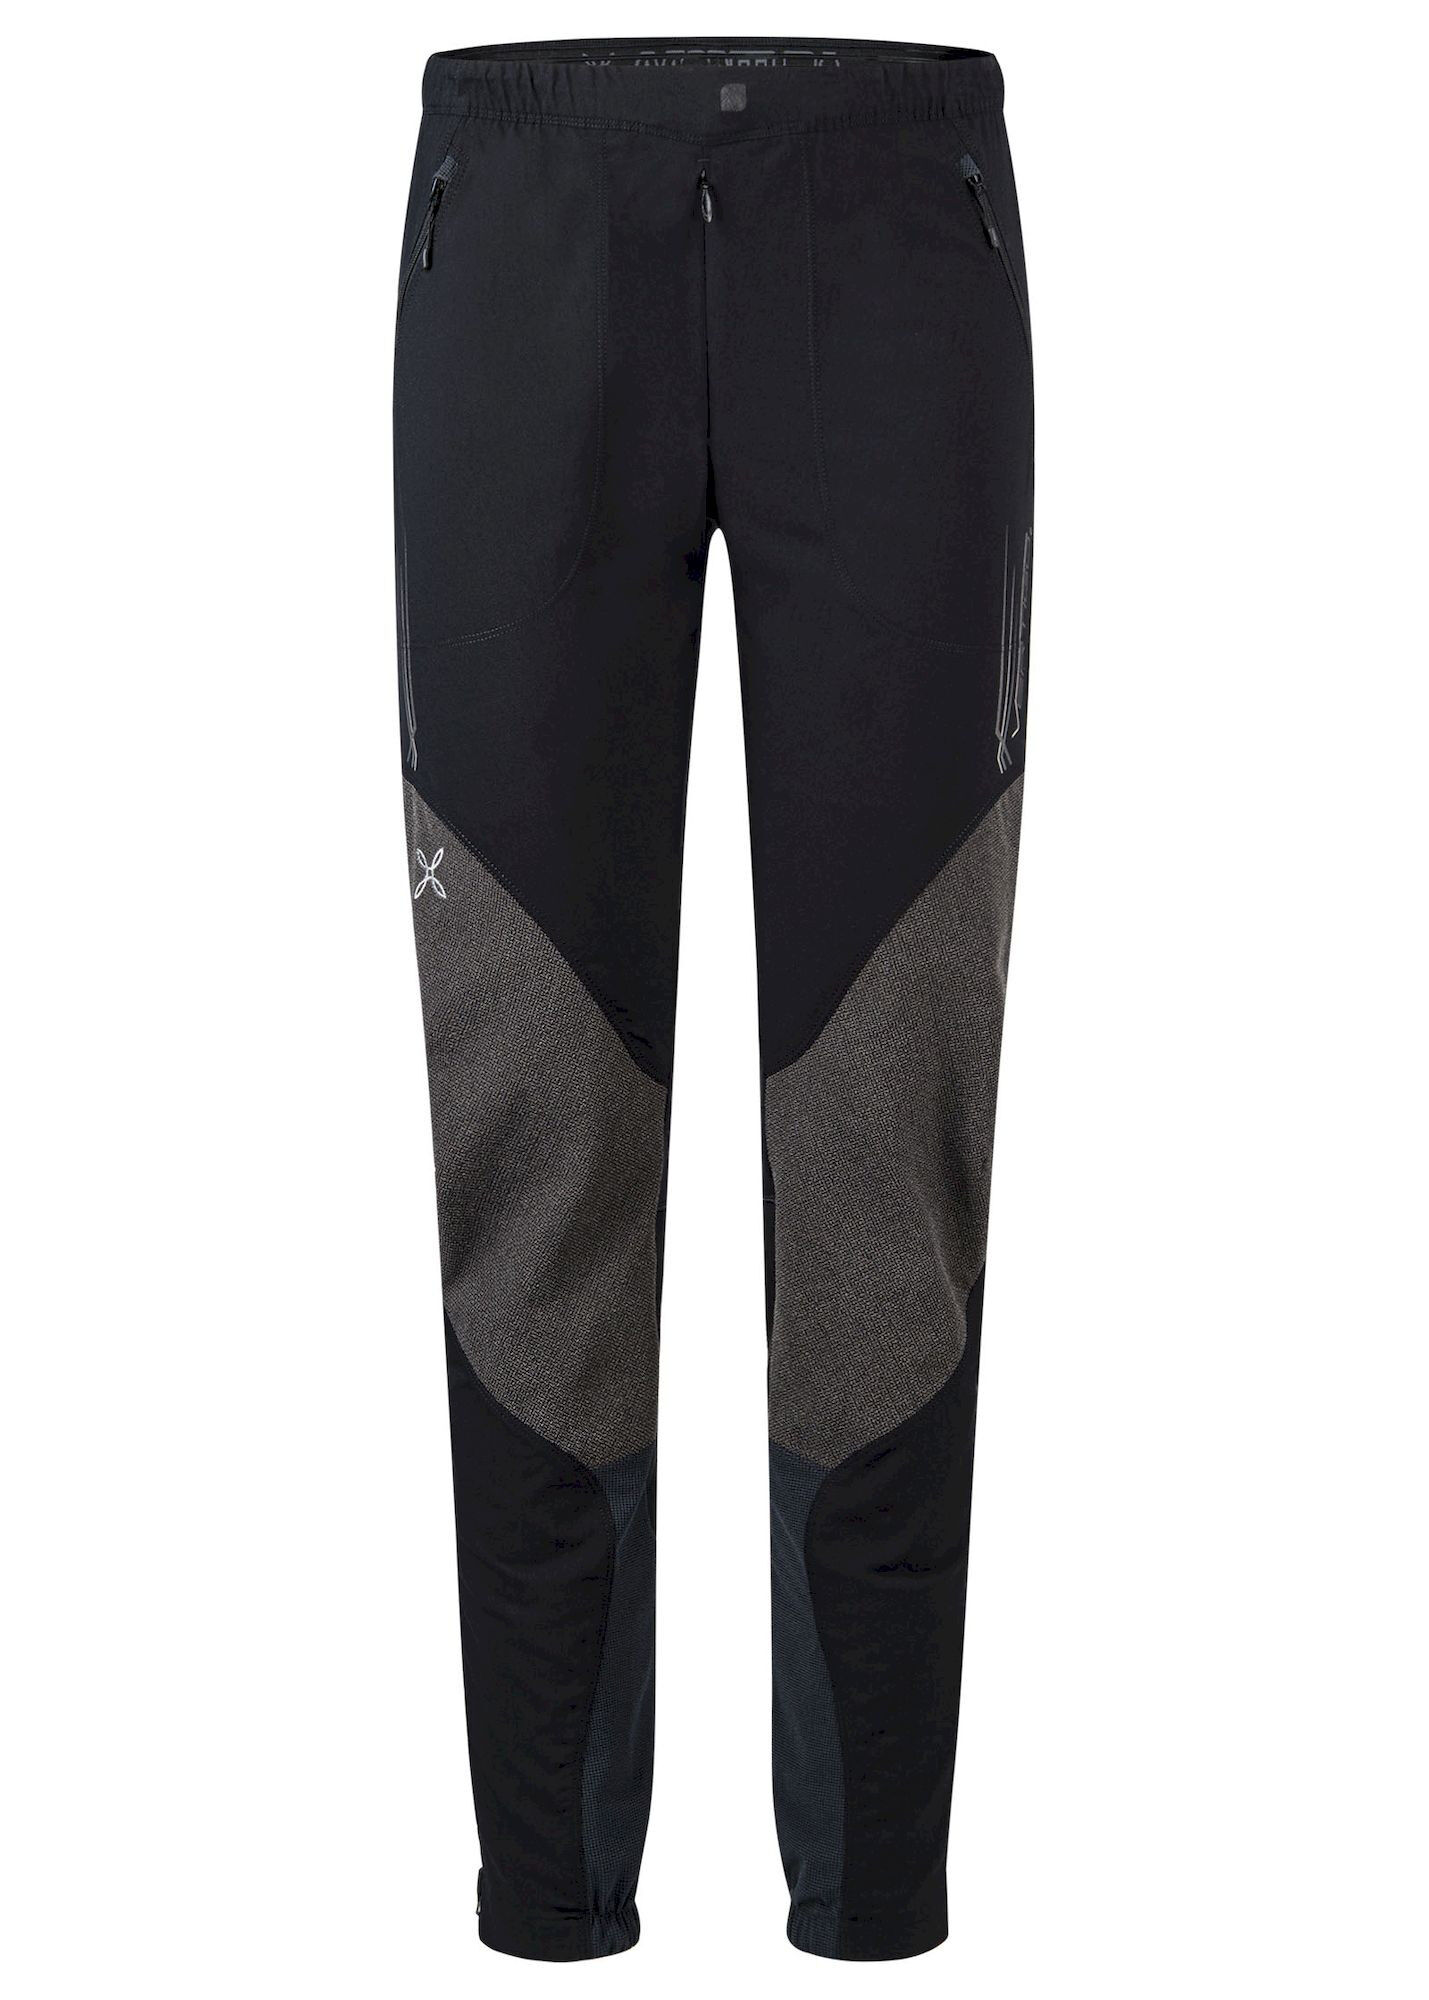 Montura Vertigo 2.0 Pants - Mountaineering trousers - Men's | Hardloop